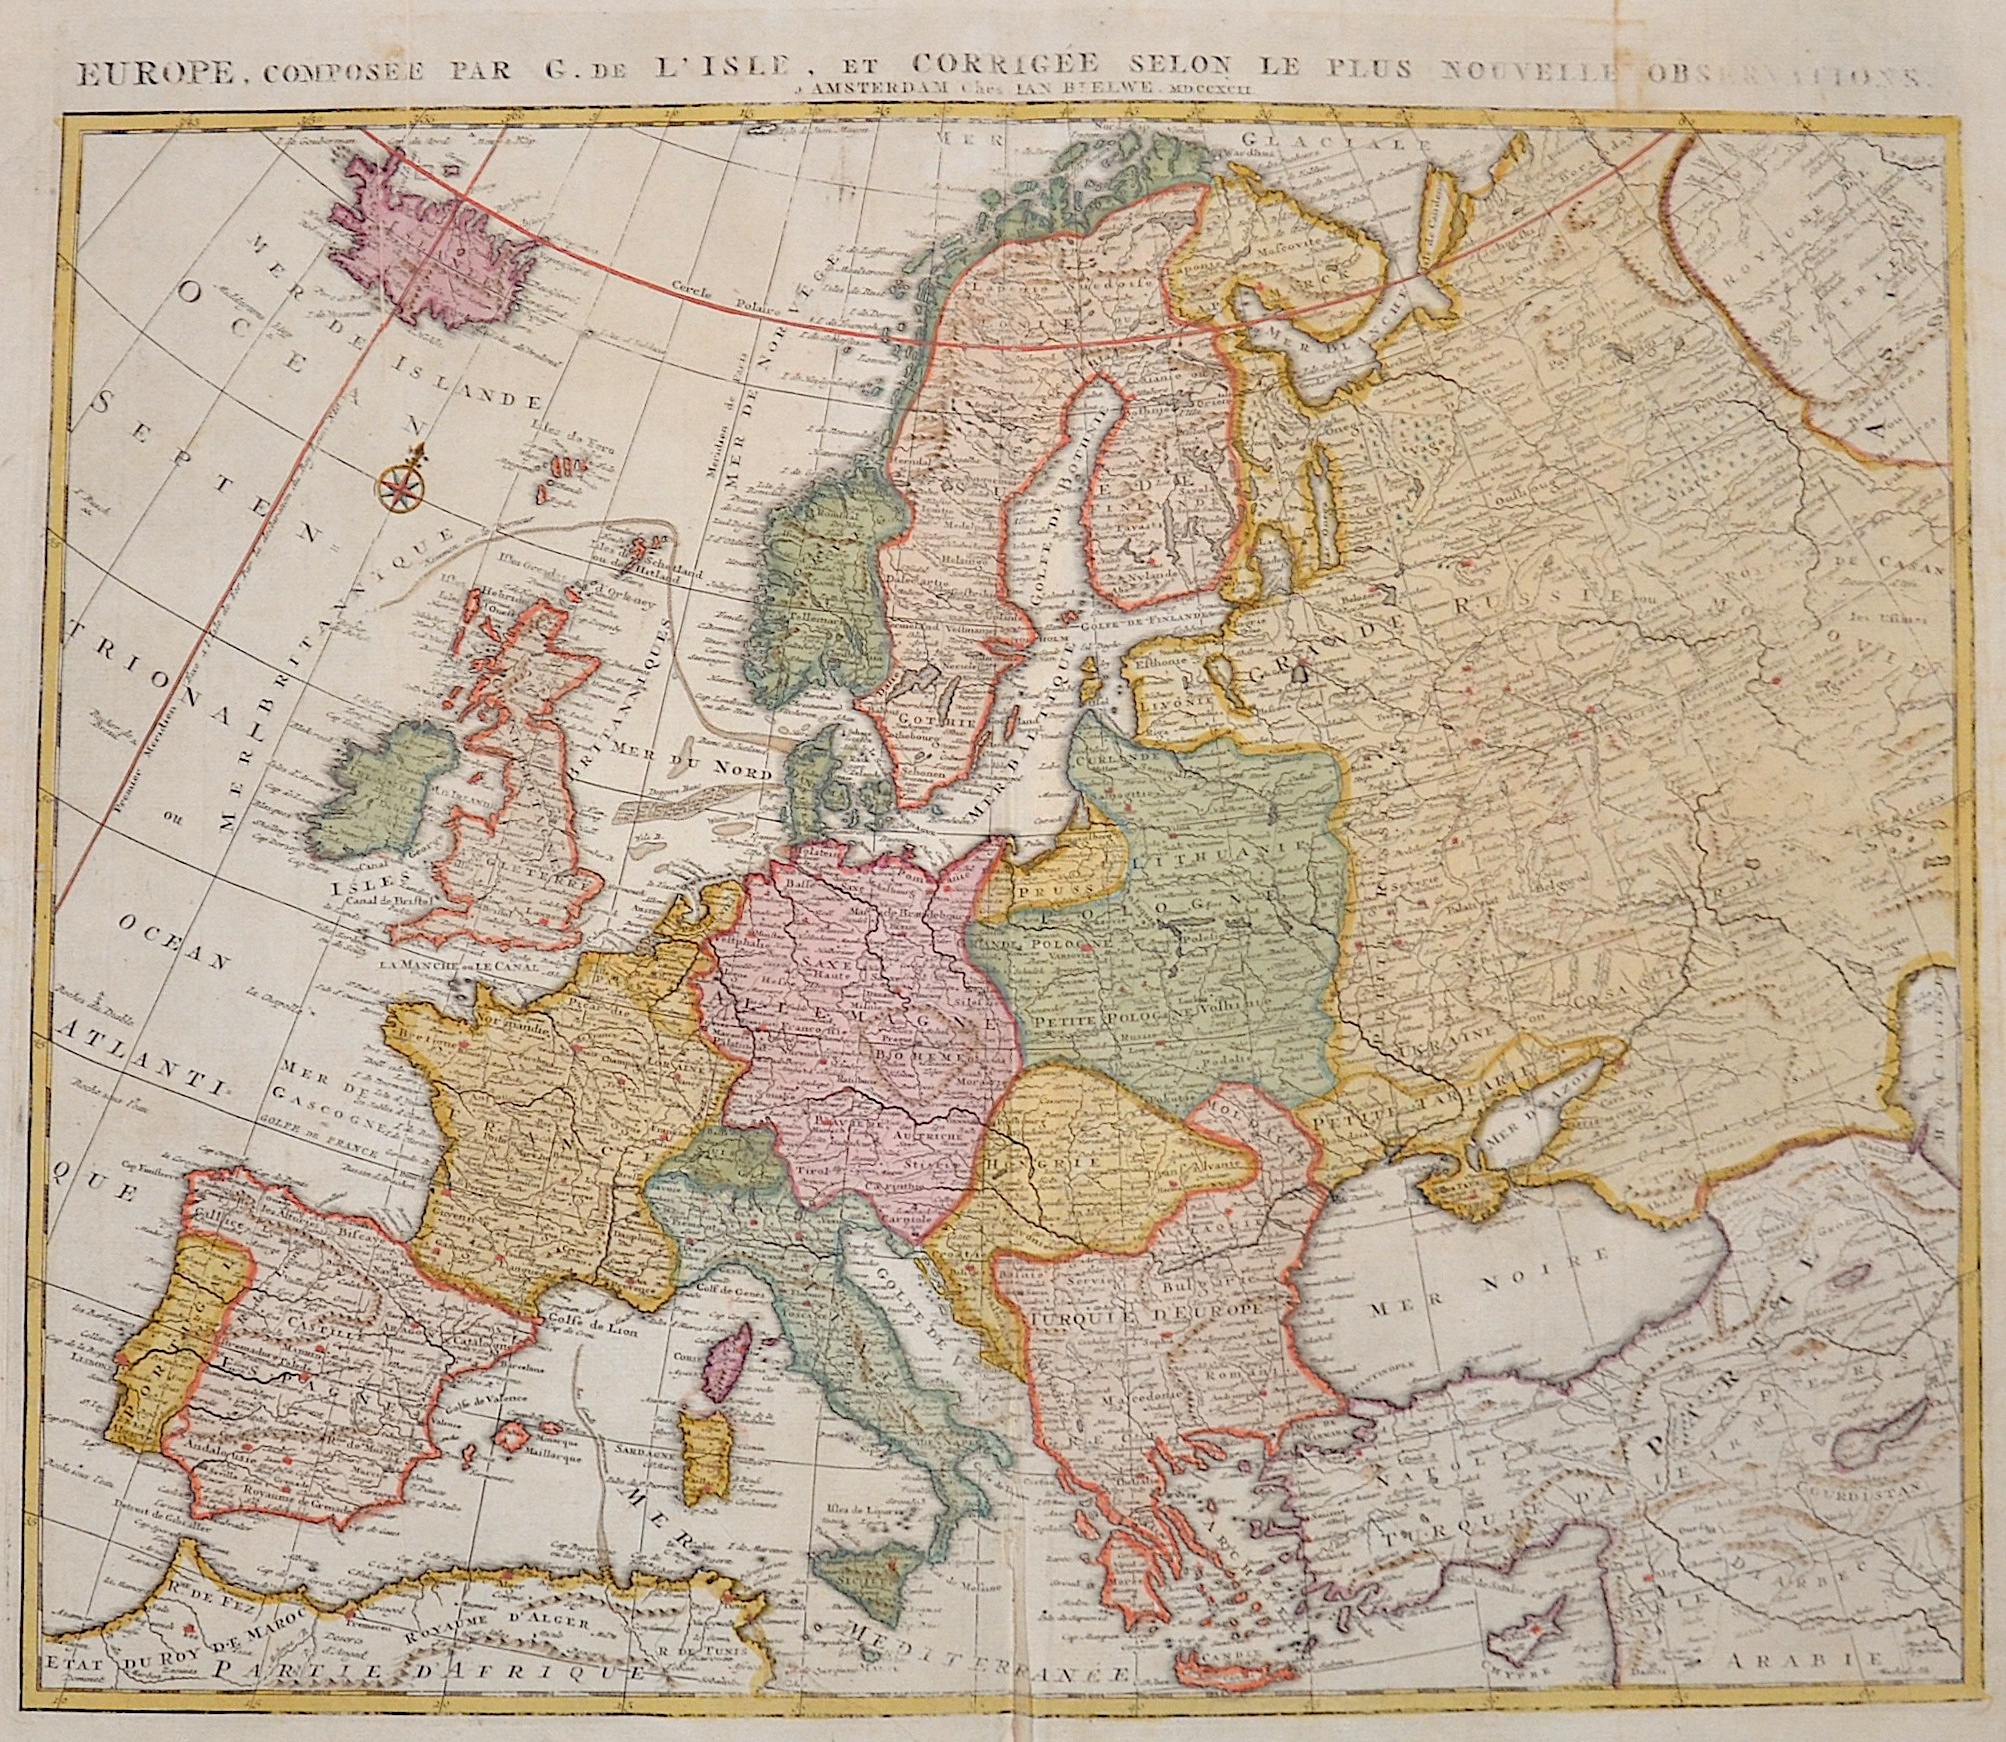 Elwe  Europe, composée par G. d´ Isle et corrigée selon le plus nouvelle observations